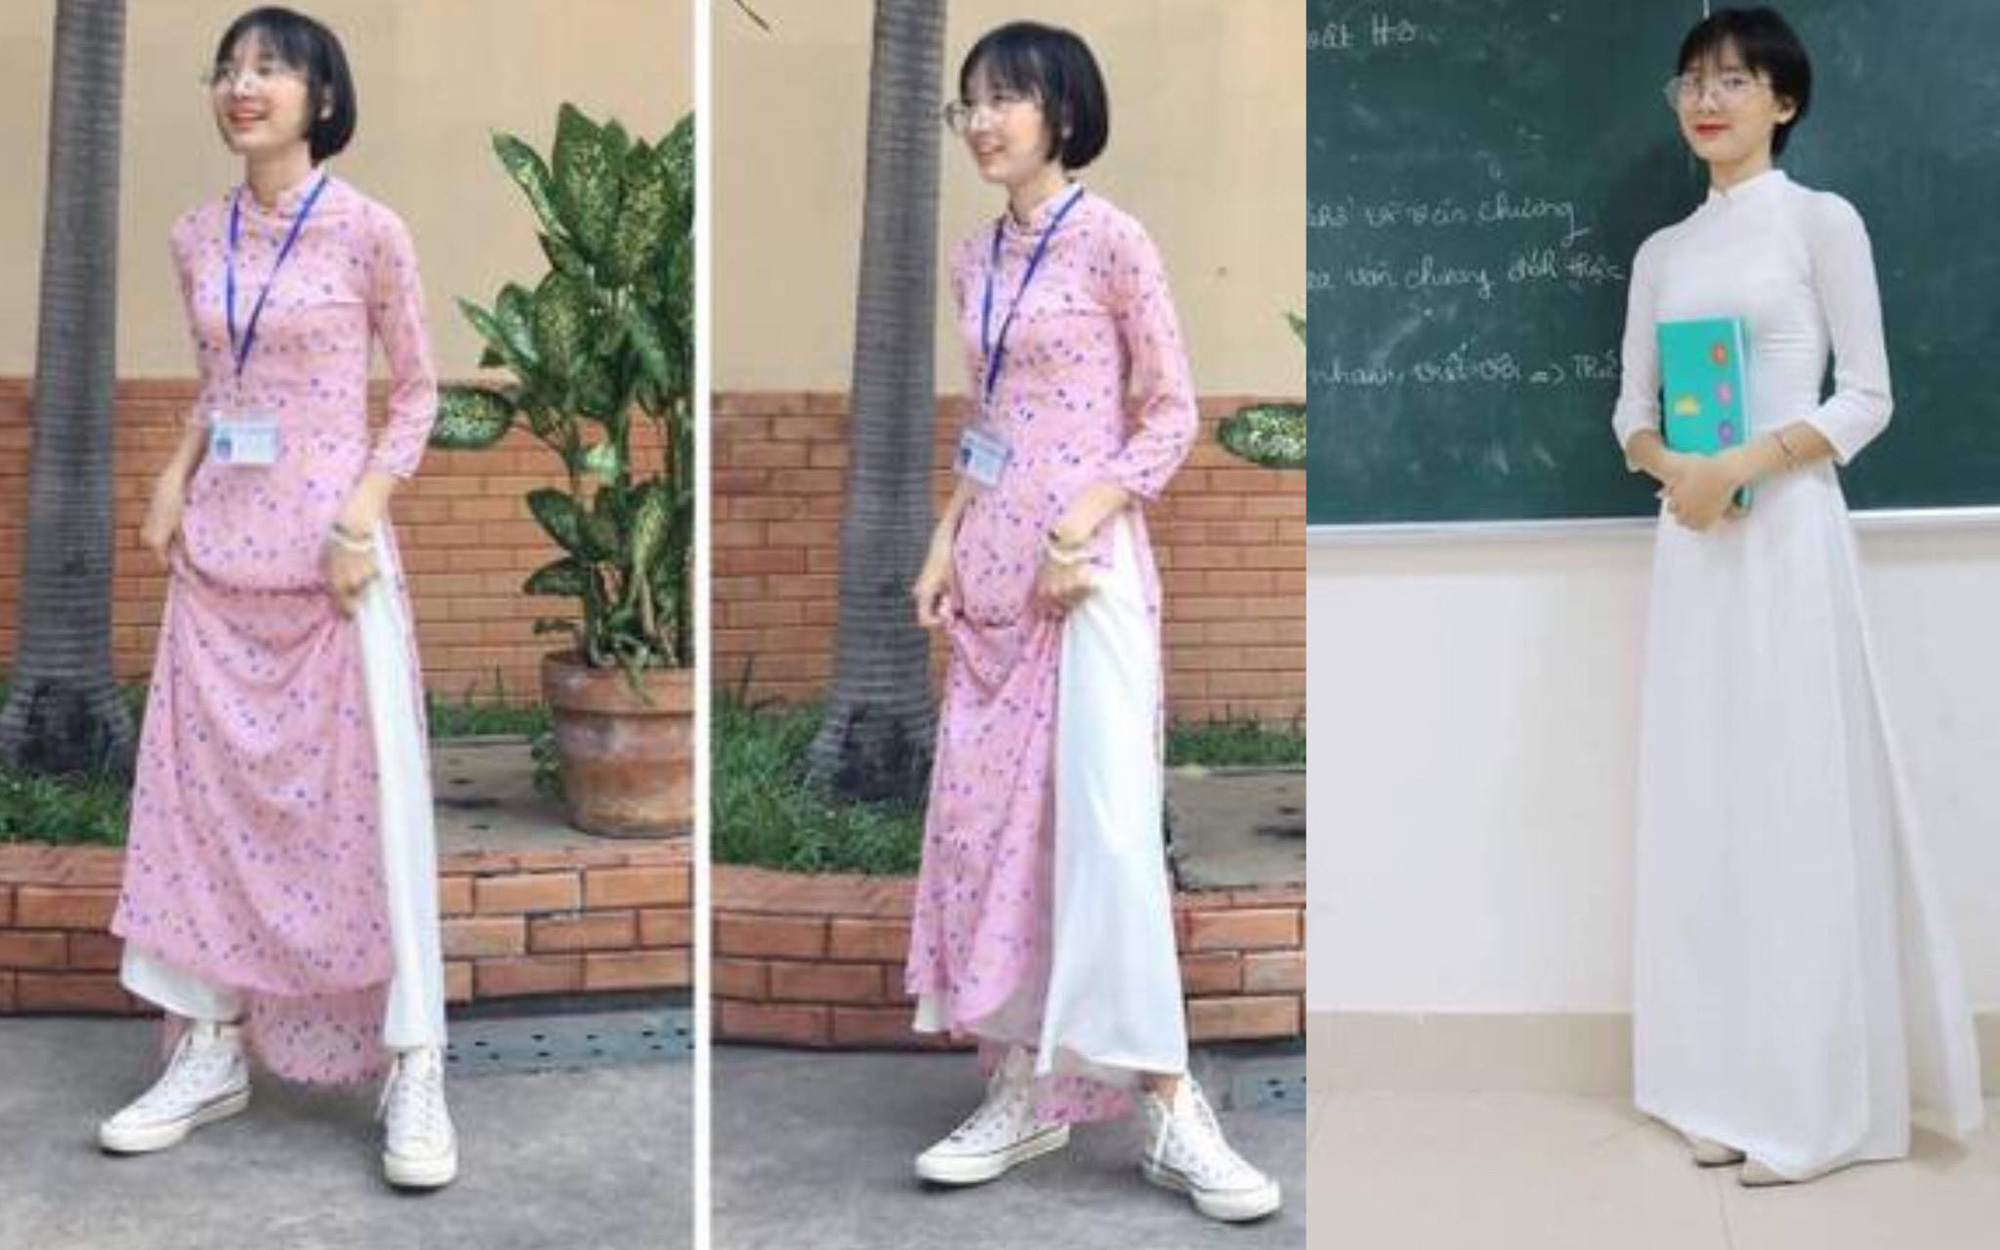 Bị học sinh và dân mạng chỉ trích vì diện áo dài lại mang sneaker khi đi dạy, cô giáo Sư phạm lên tiếng giải thích